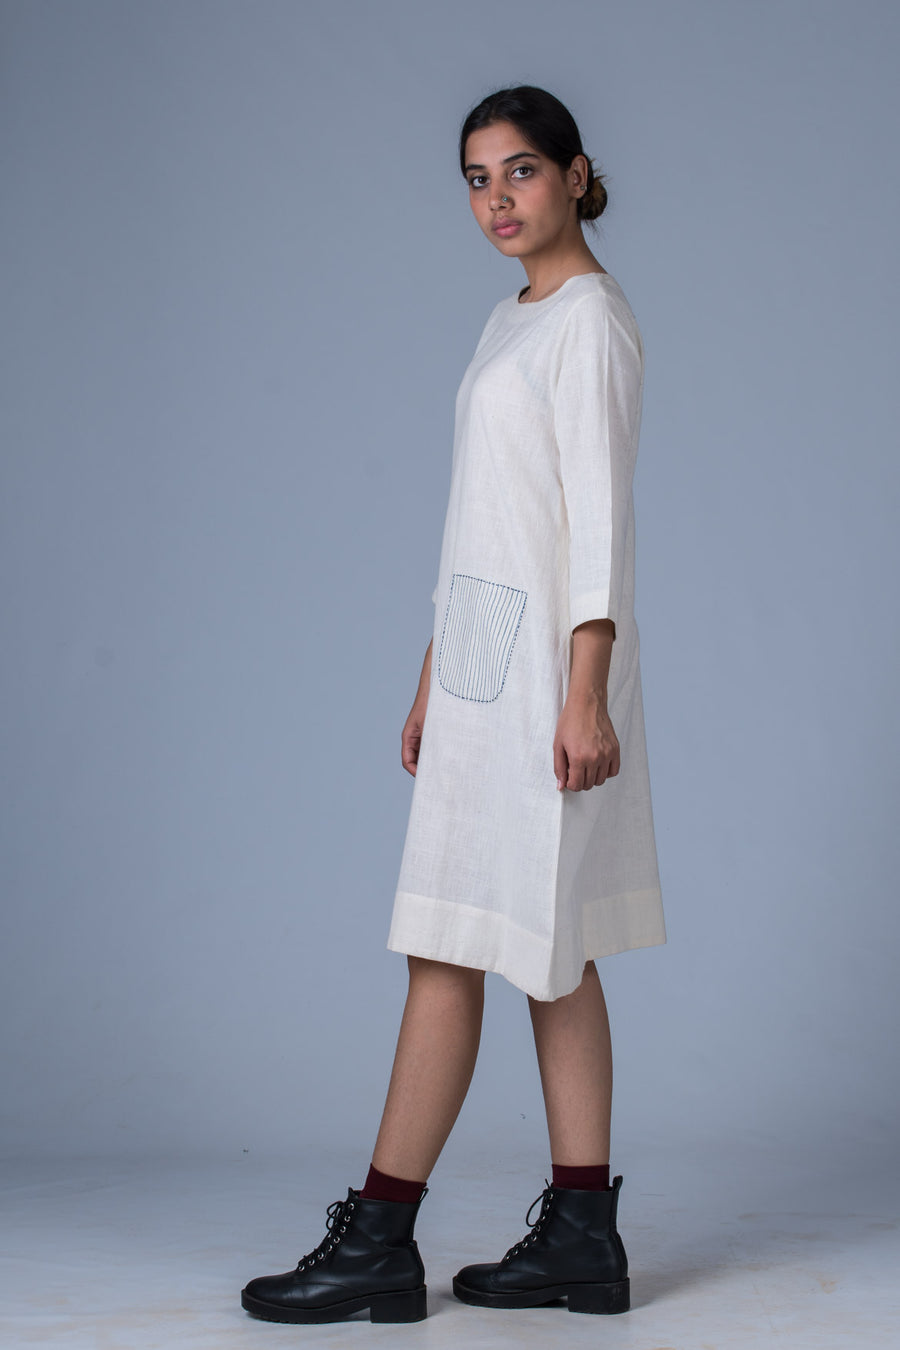 Off White Desi Khadi Dress - PARINA - Upasana Design Studio